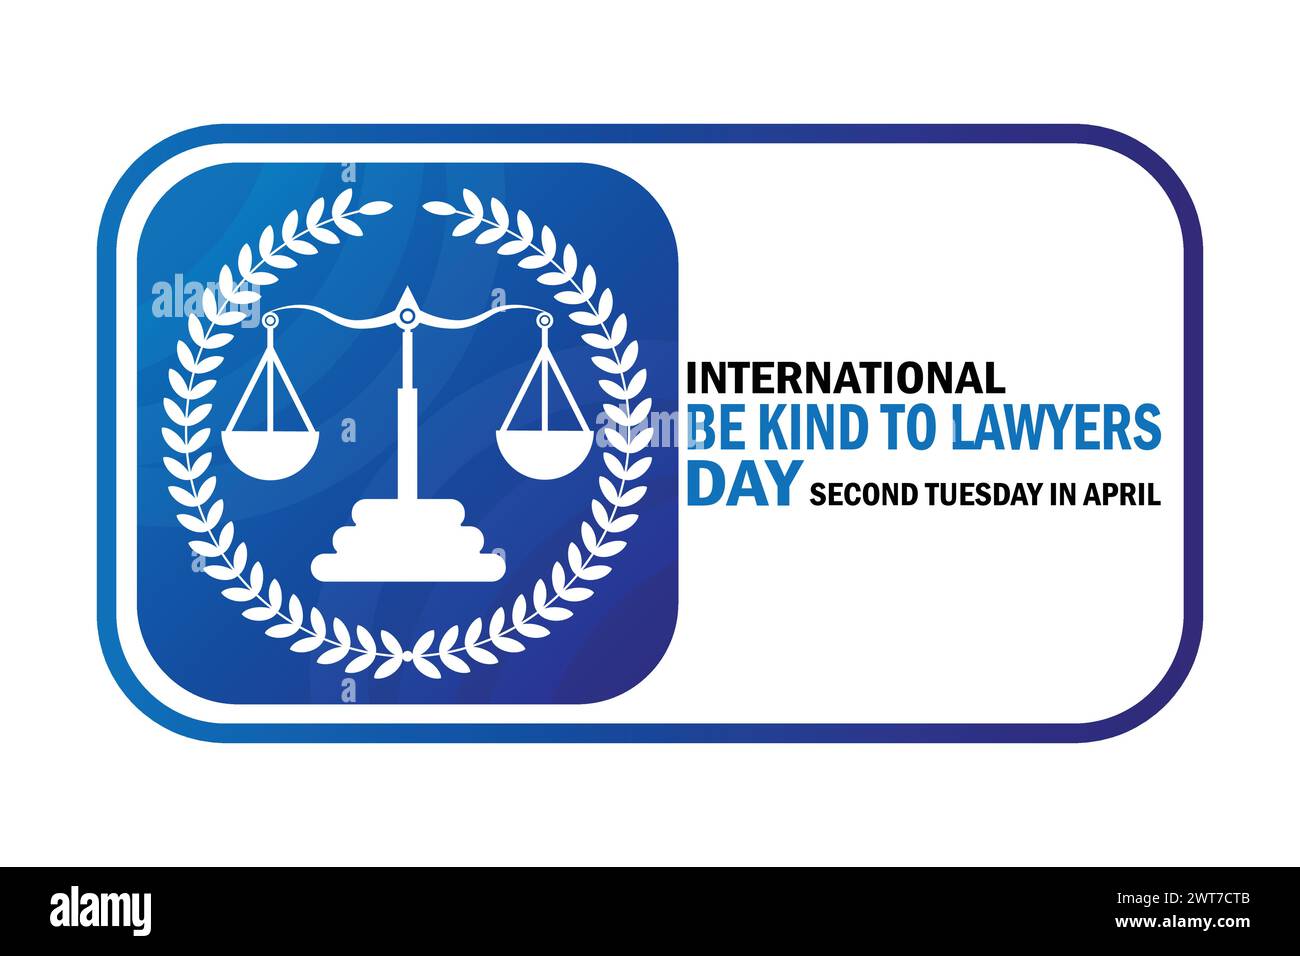 International Be Kind to Lawyers Day fond d'écran avec des formes et de la typographie. Journée internationale Be Kind to Lawyers, contexte Illustration de Vecteur